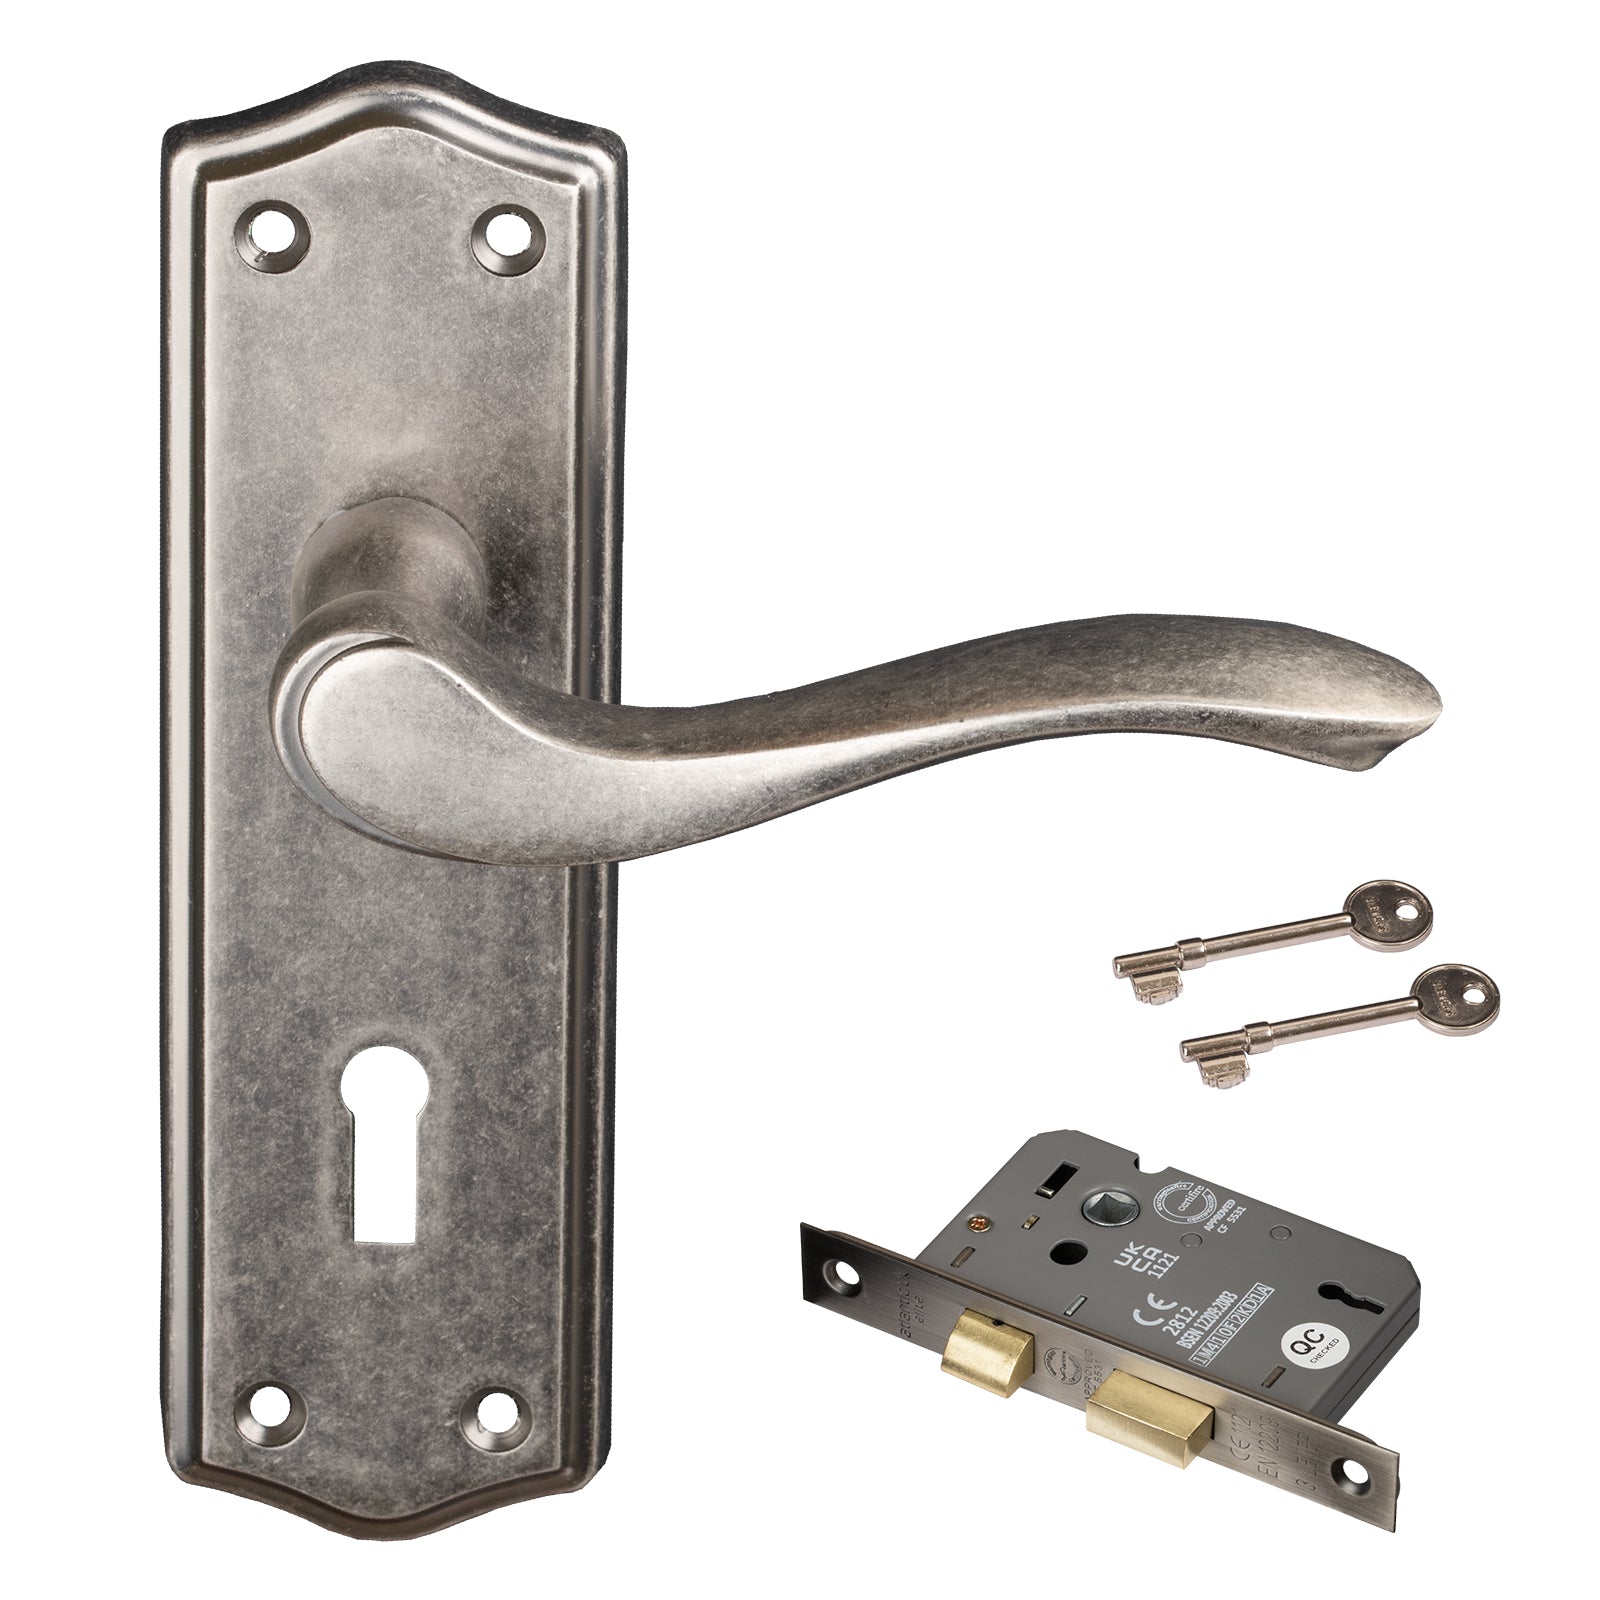 Distressed silver Warwick door handle 3 lever lock set